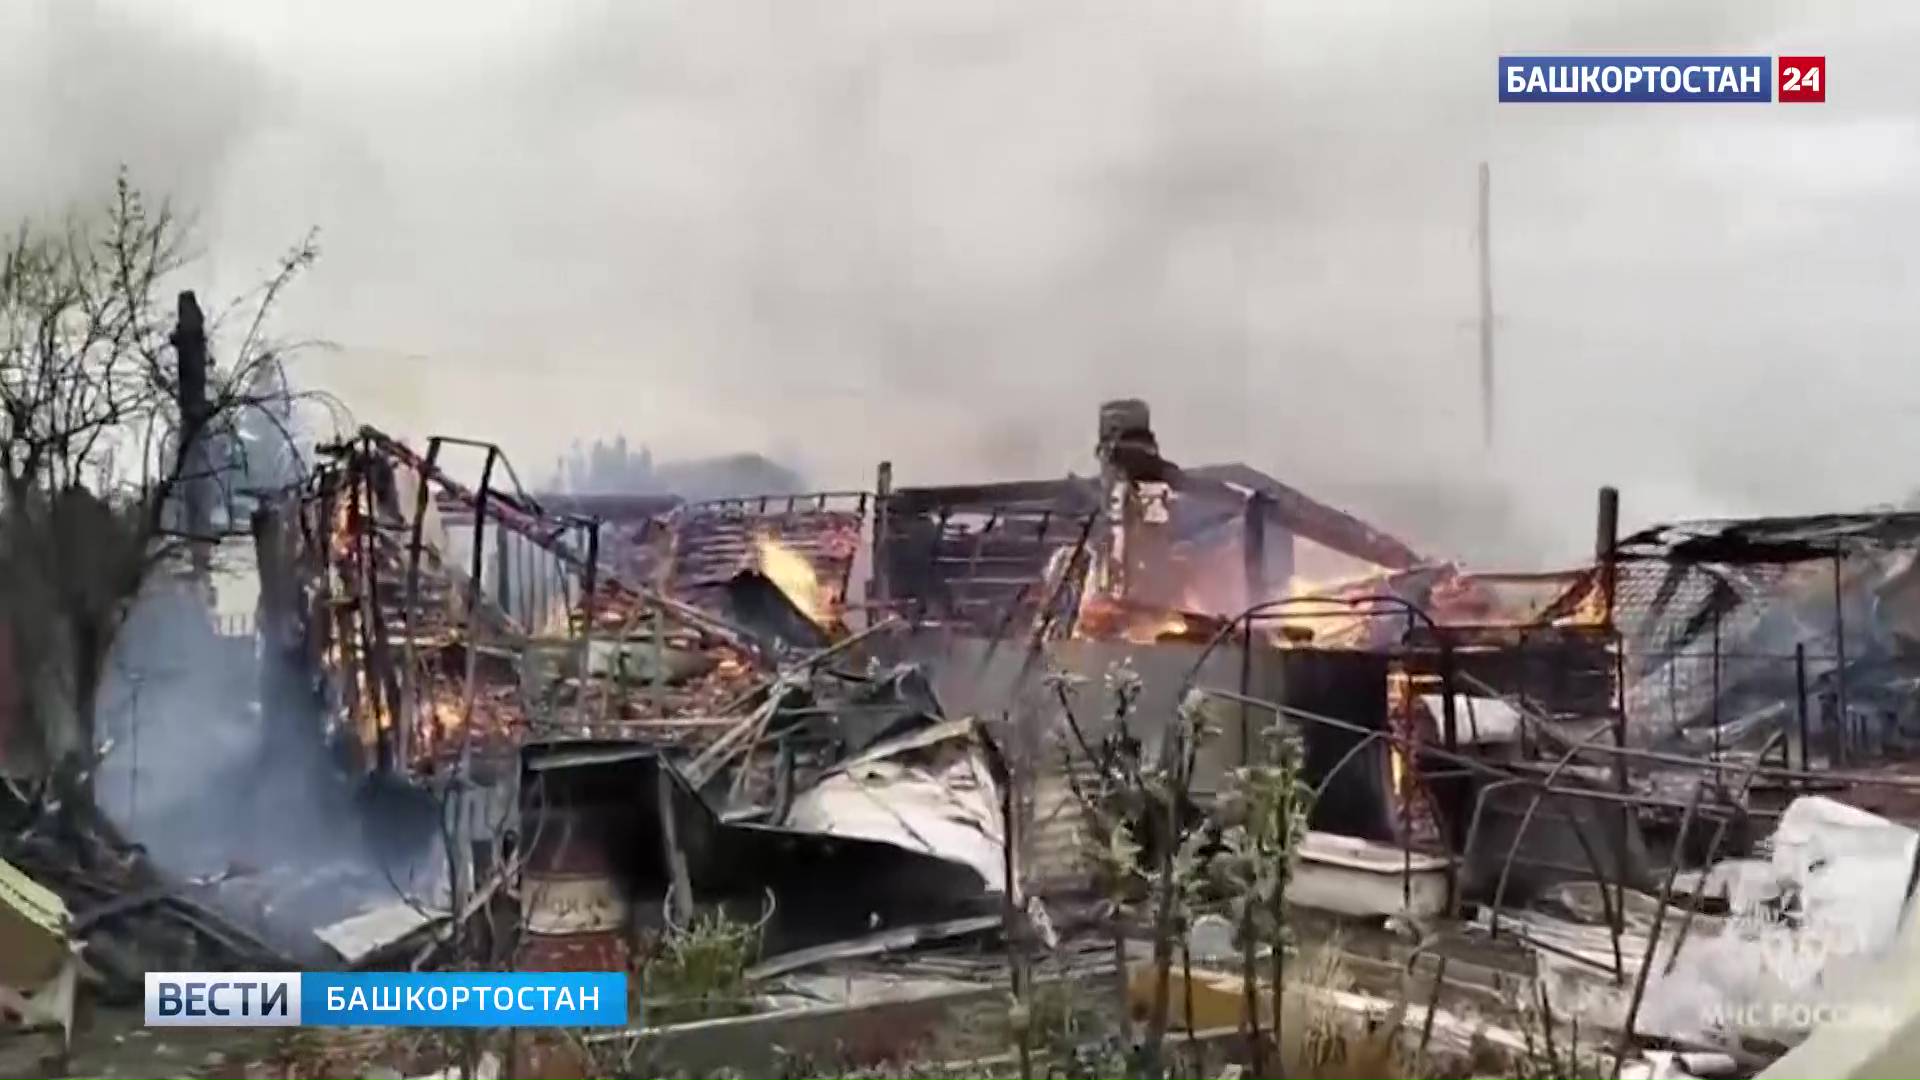 Короткое замыкание: в Уфе в СНТ “Ручеек” загорелись 5 садовых домов и беседка, пострадавших нет